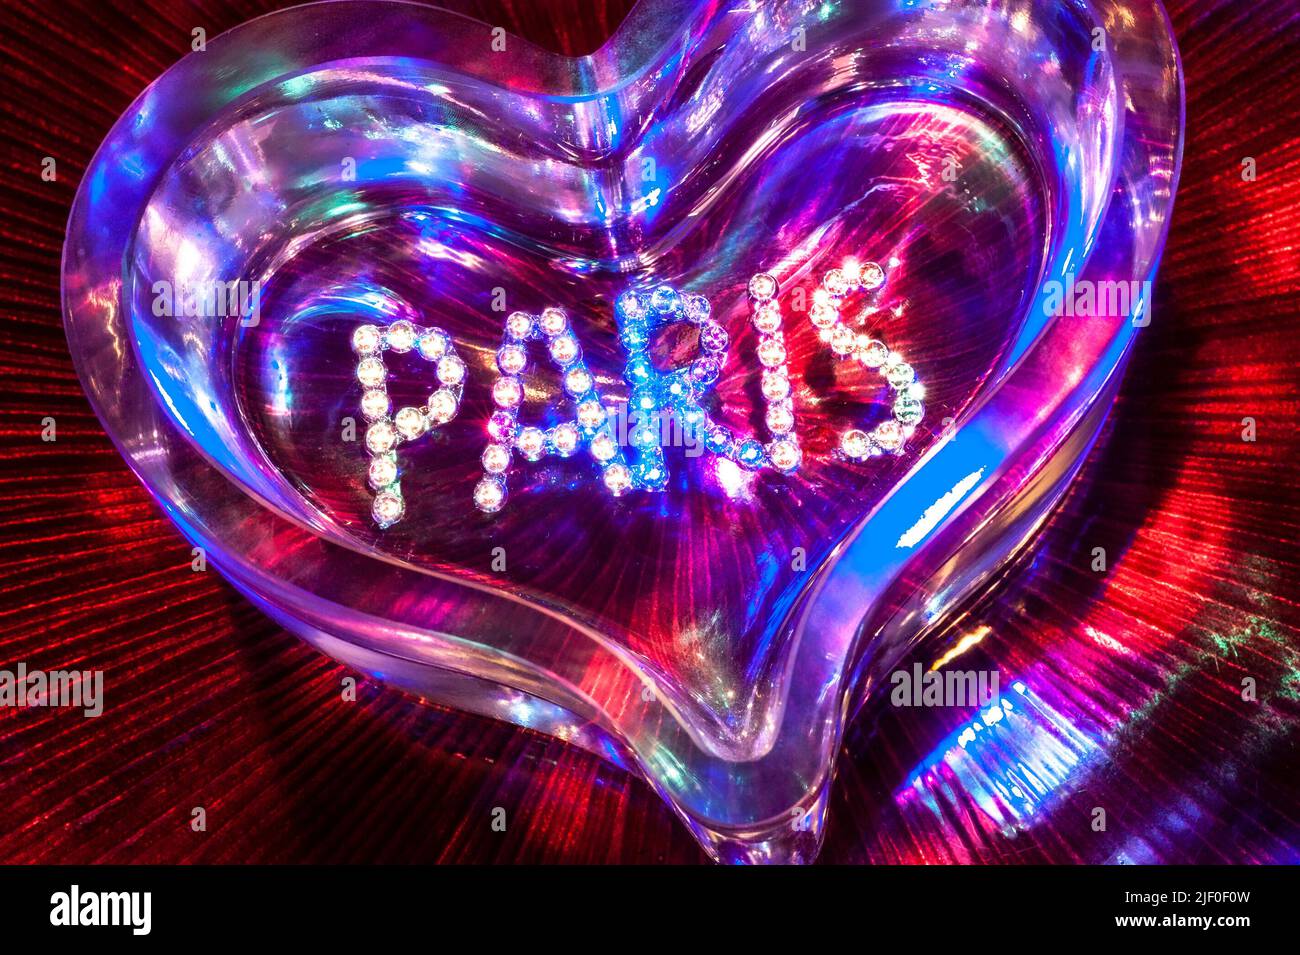 PARIS NIGHTCLUB PIGALLE SHOWTIME CABARET CLUB diamanti cristallo cuore di vetro con illuminazione di colori misti nel divertimento club party teatro discoteca show concept Foto Stock